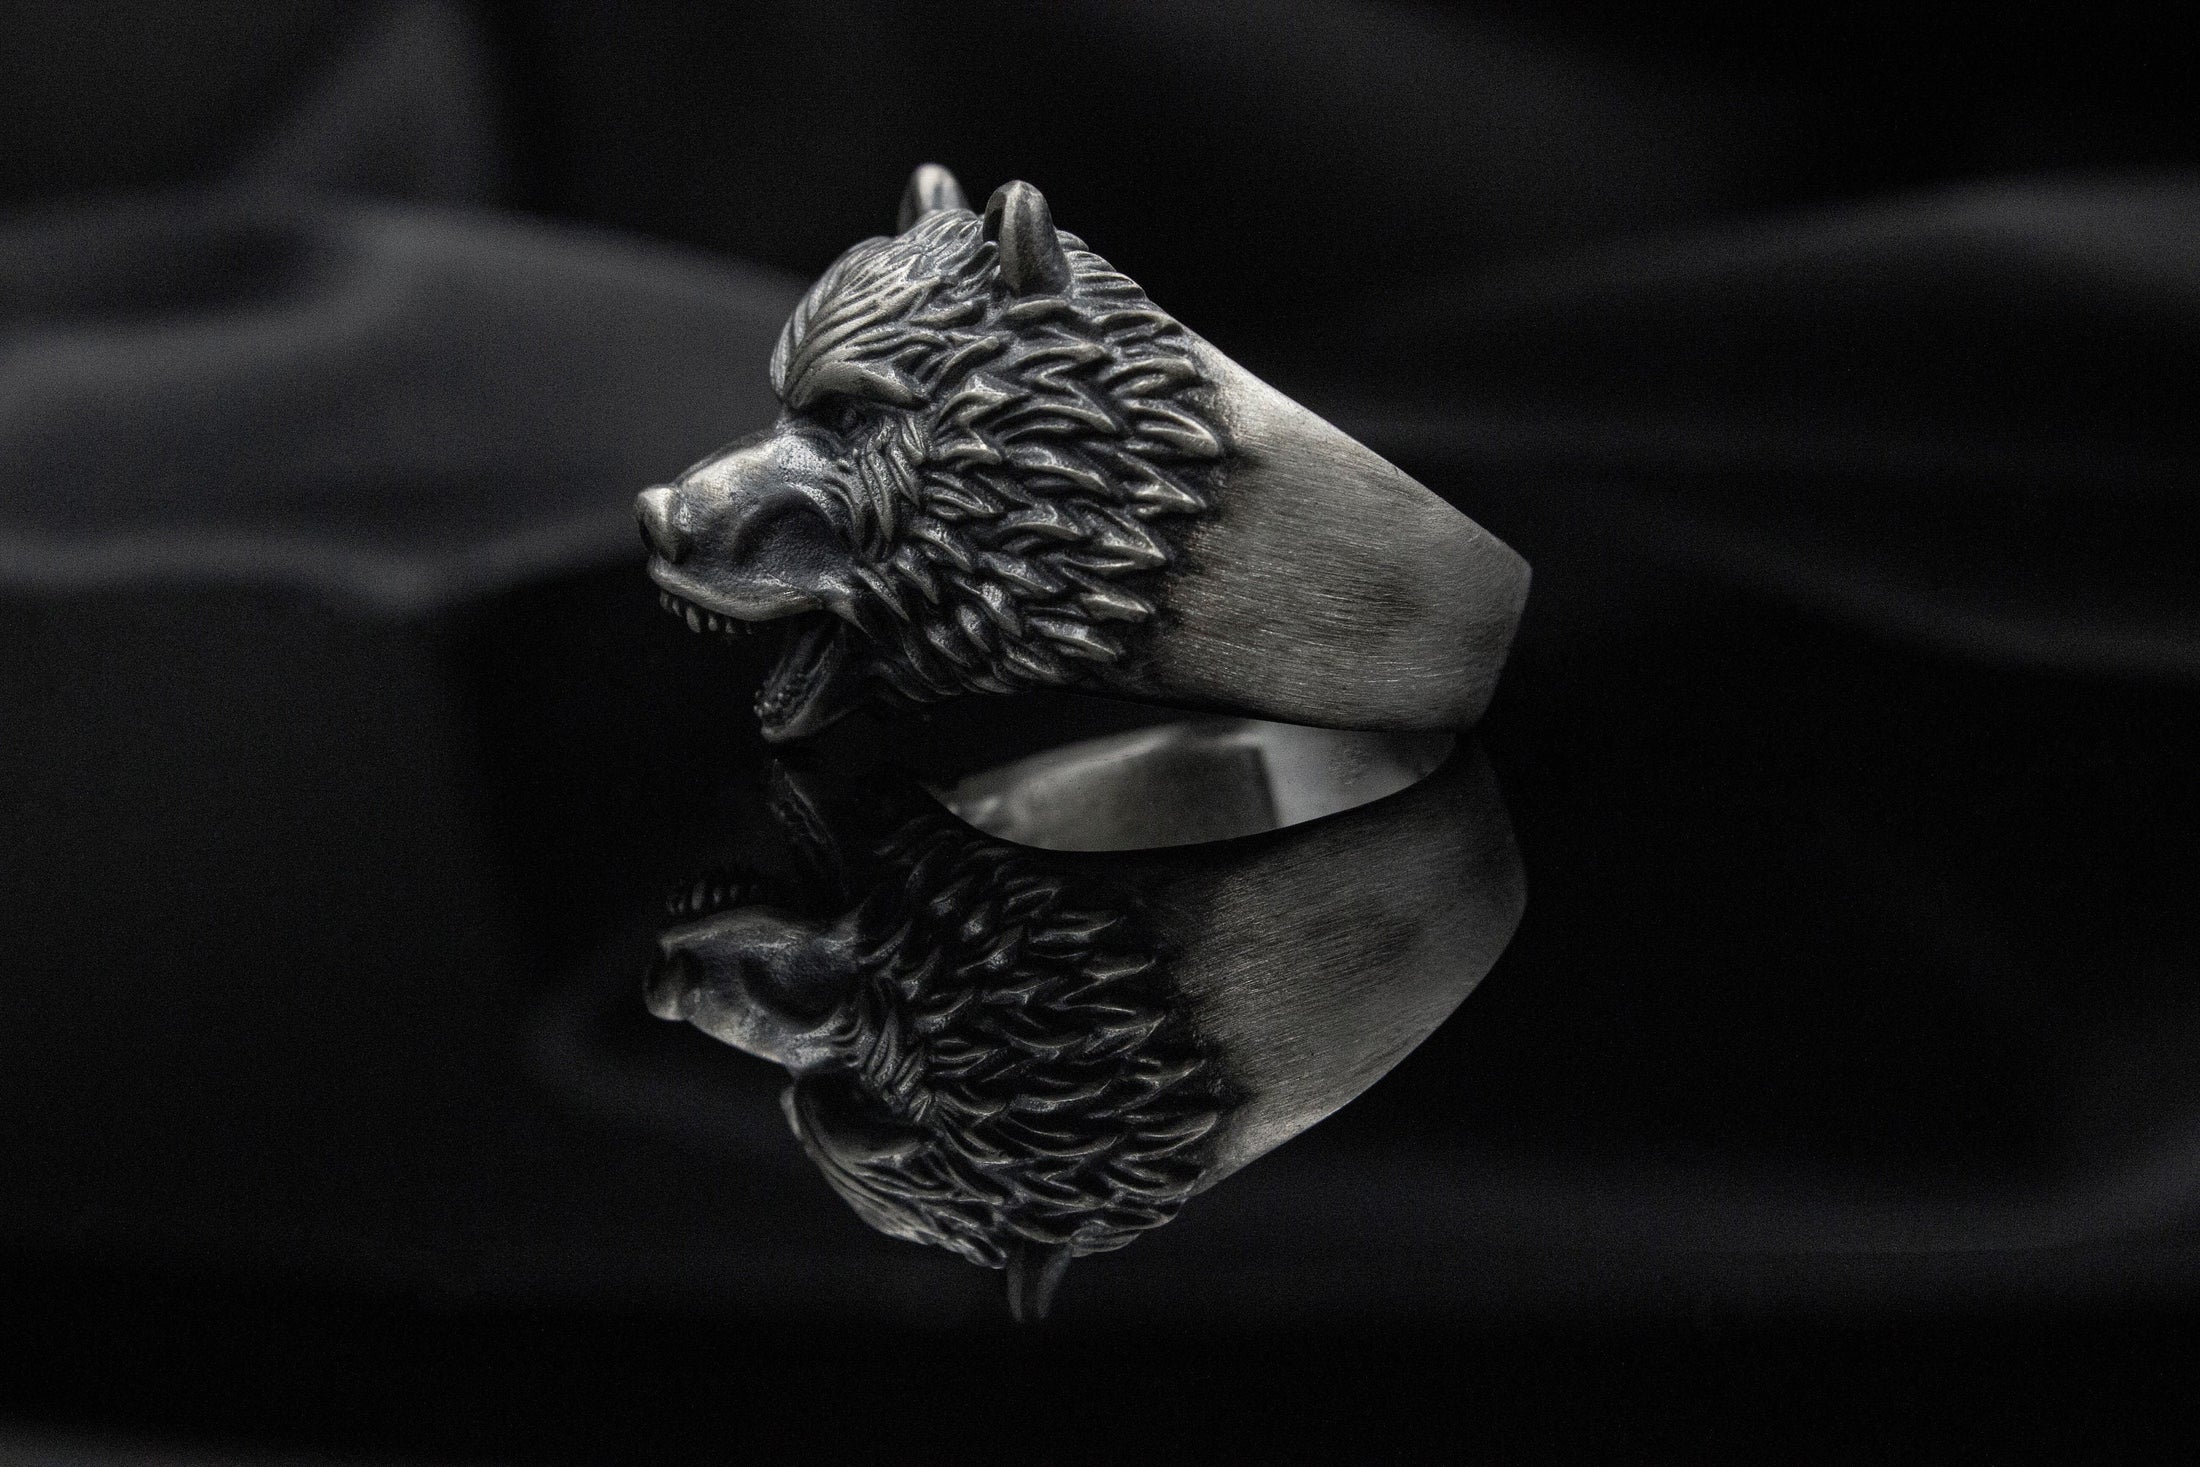 Angry Bear Ring